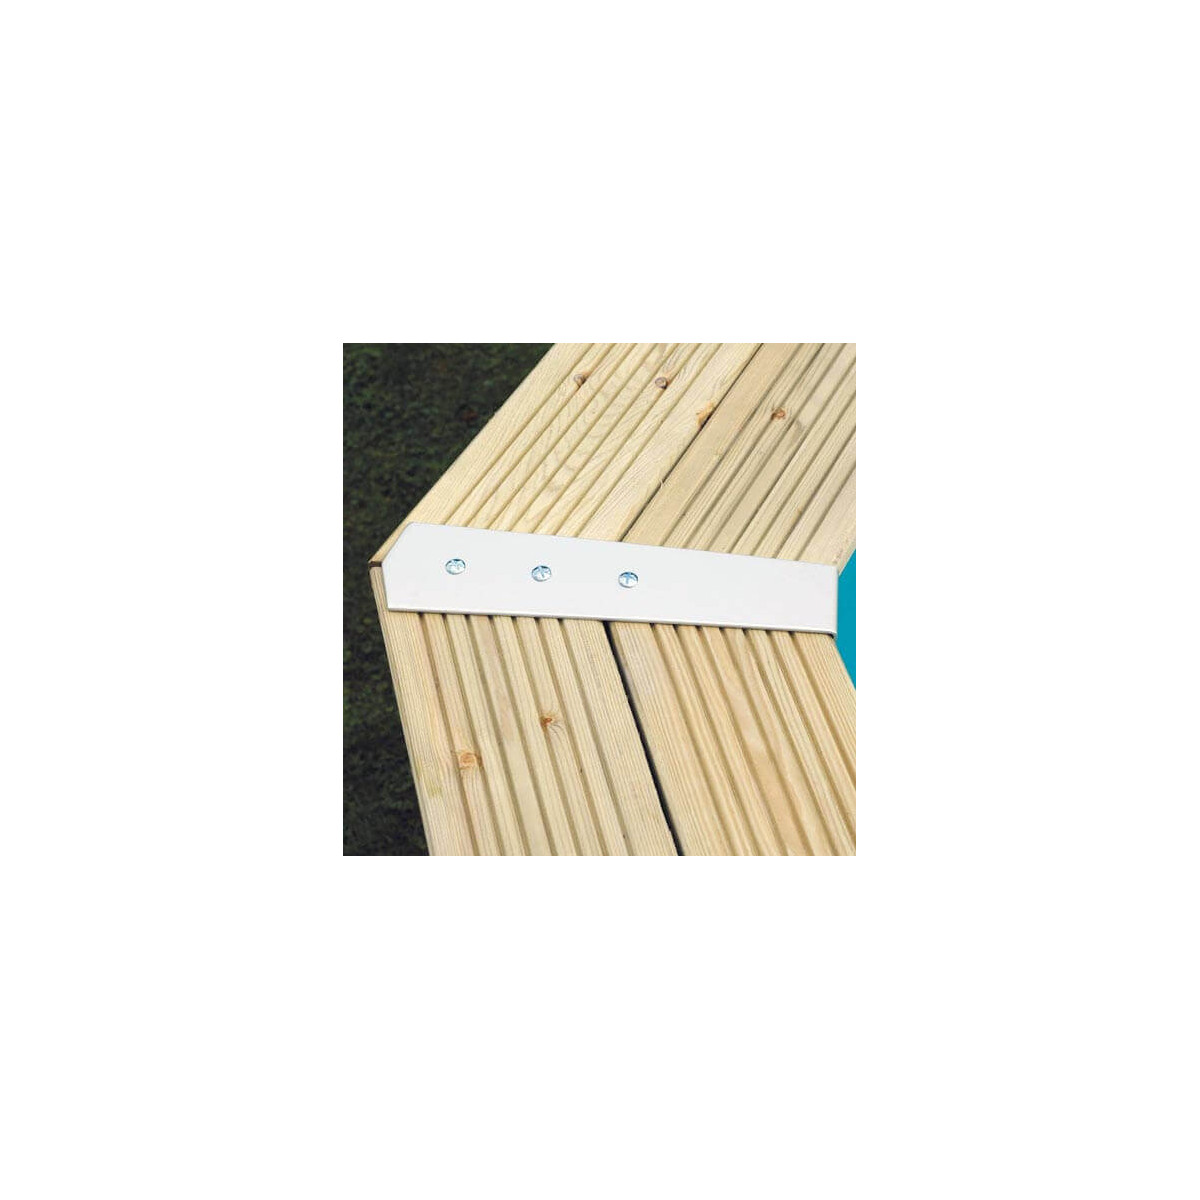 Piscine LINEA 350 x 650 x H140 cm liner gris en bois rectangulaire UBBINK -  ALMATEON